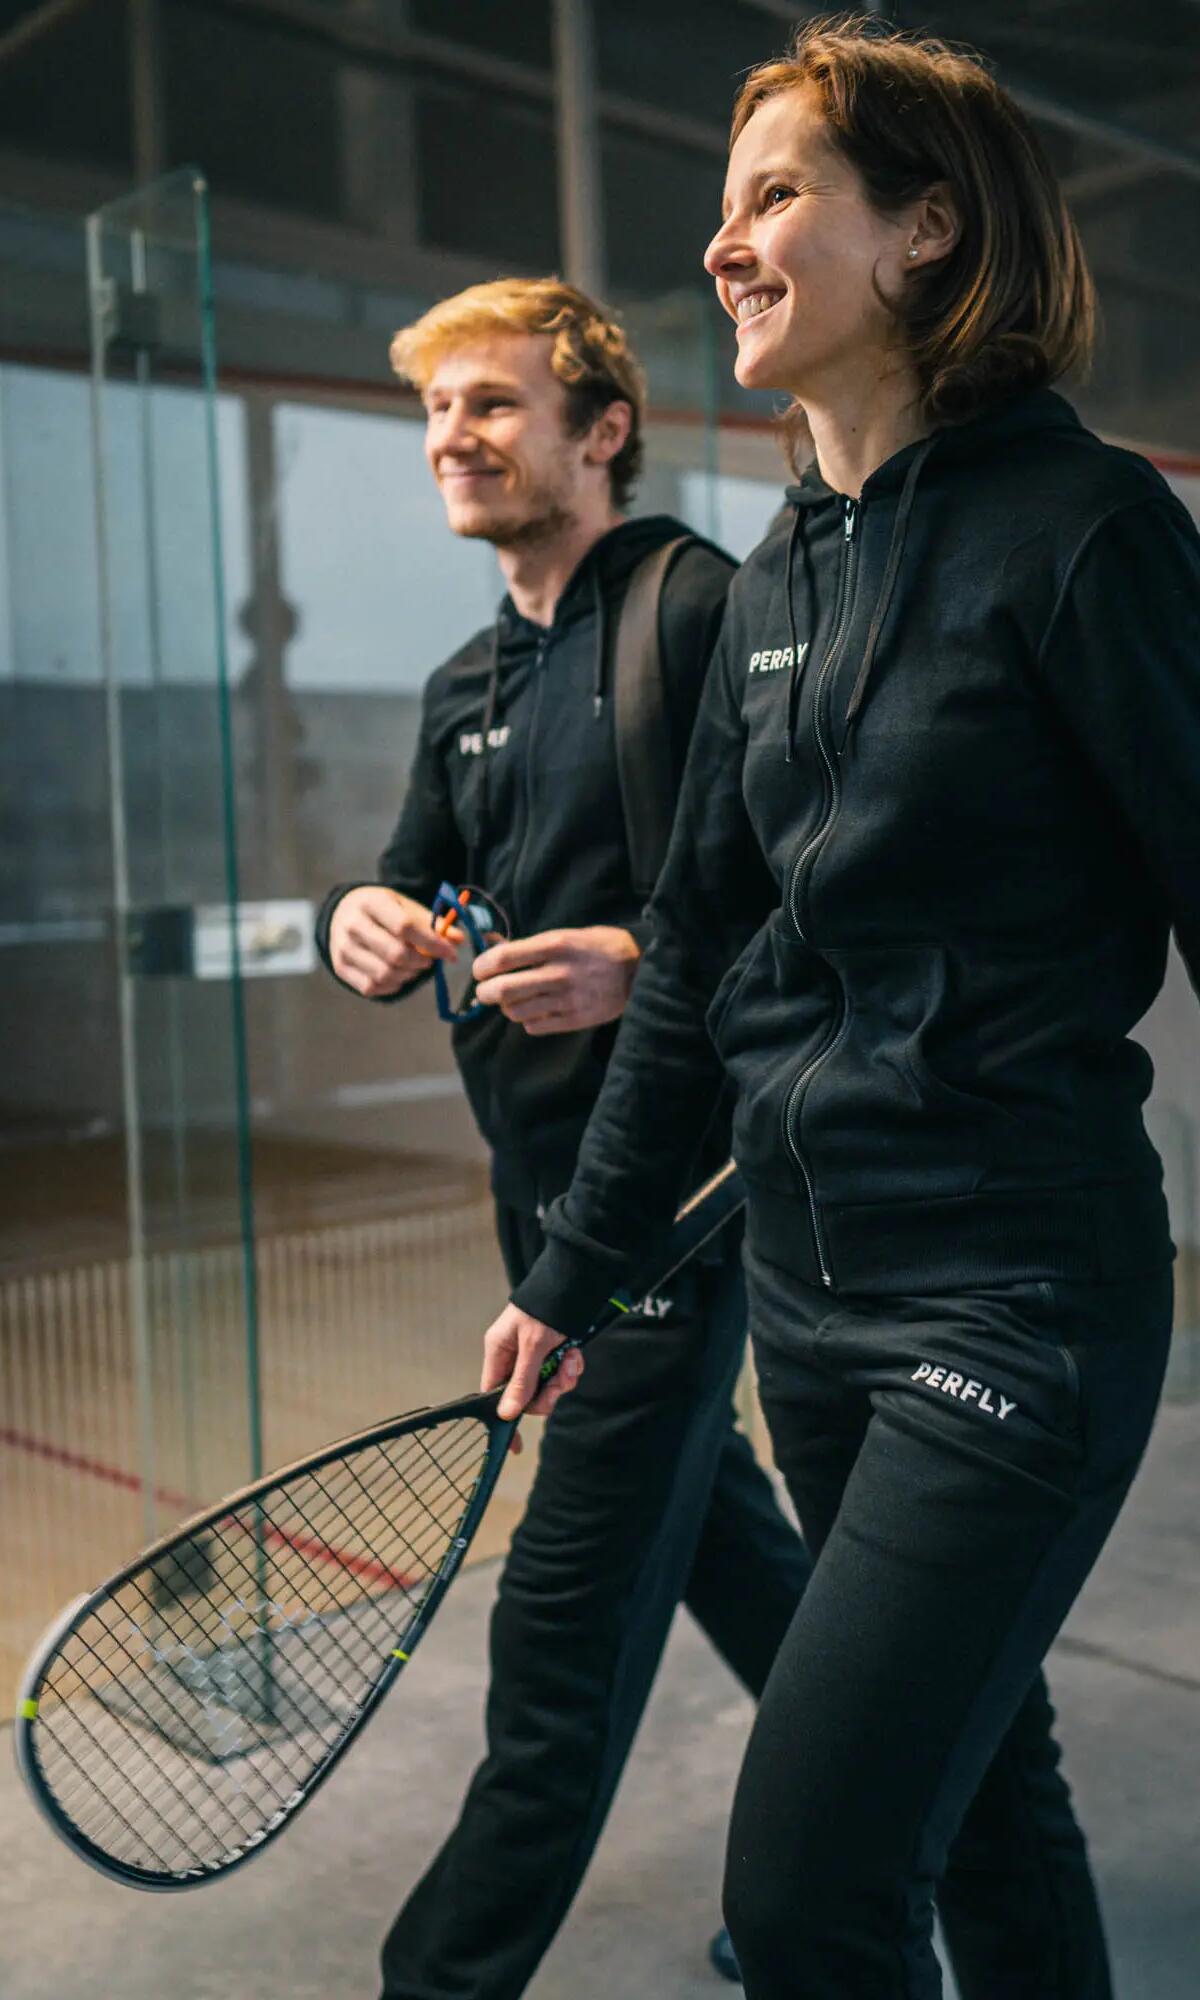 Kobieta i mężczyzna idący na squasha